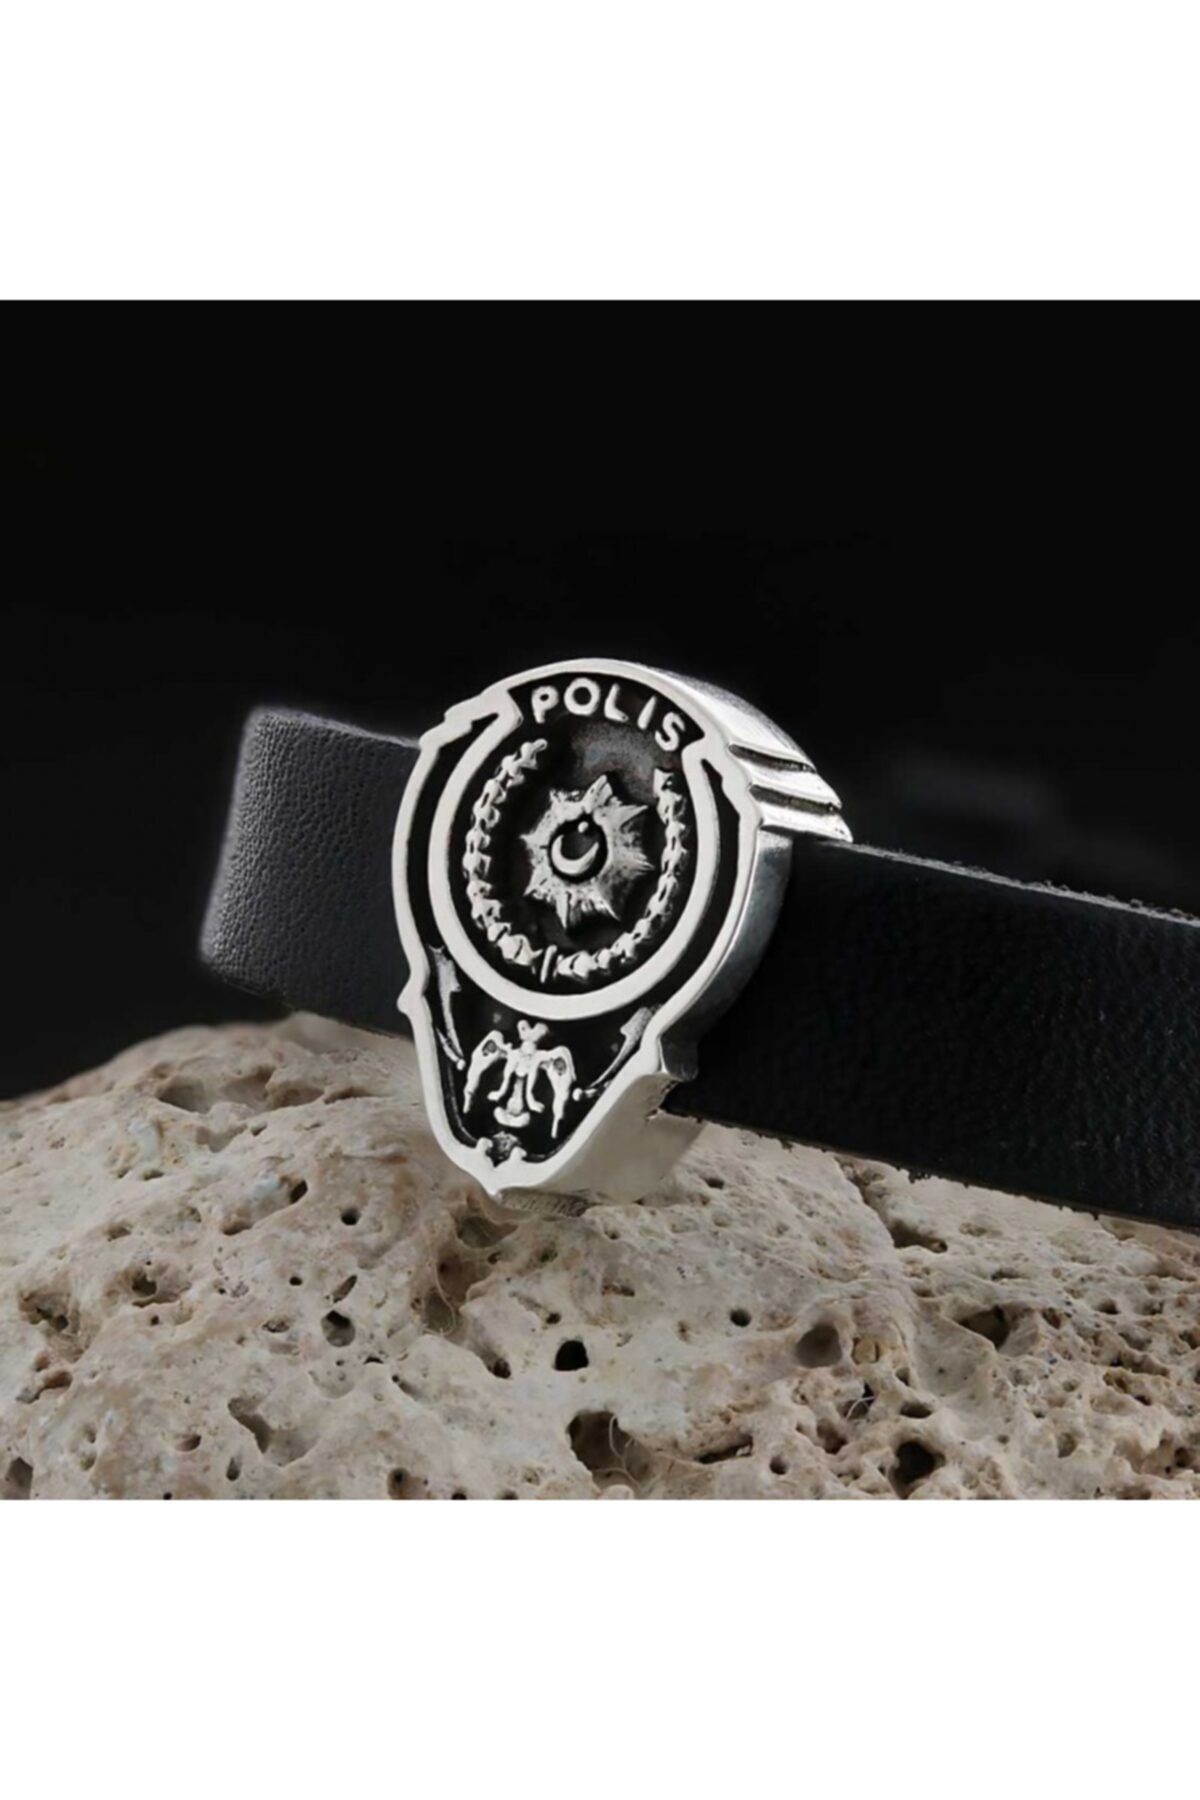 ELMAS İŞ Polis Armalı Özel Tasarım 925 Ayar Siyah Deri Gümüş Bileklik